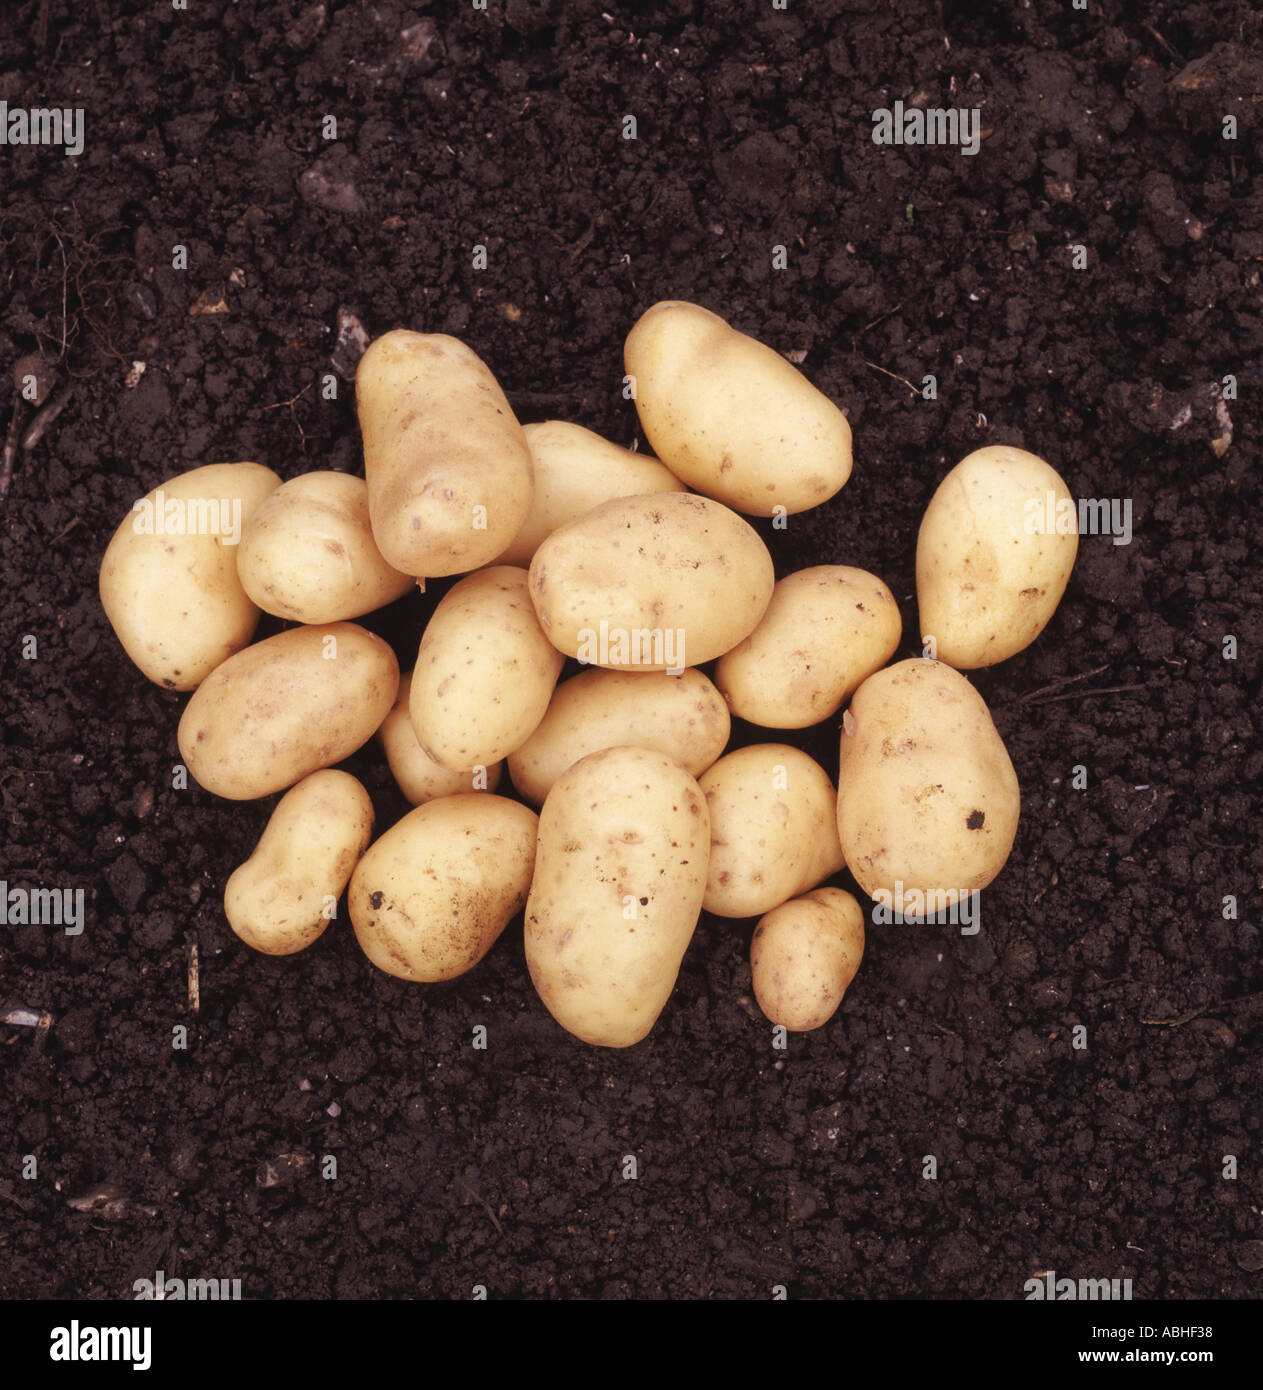 Charlotte varietà i tuberi di patata sul terreno dopo il raccolto Foto Stock